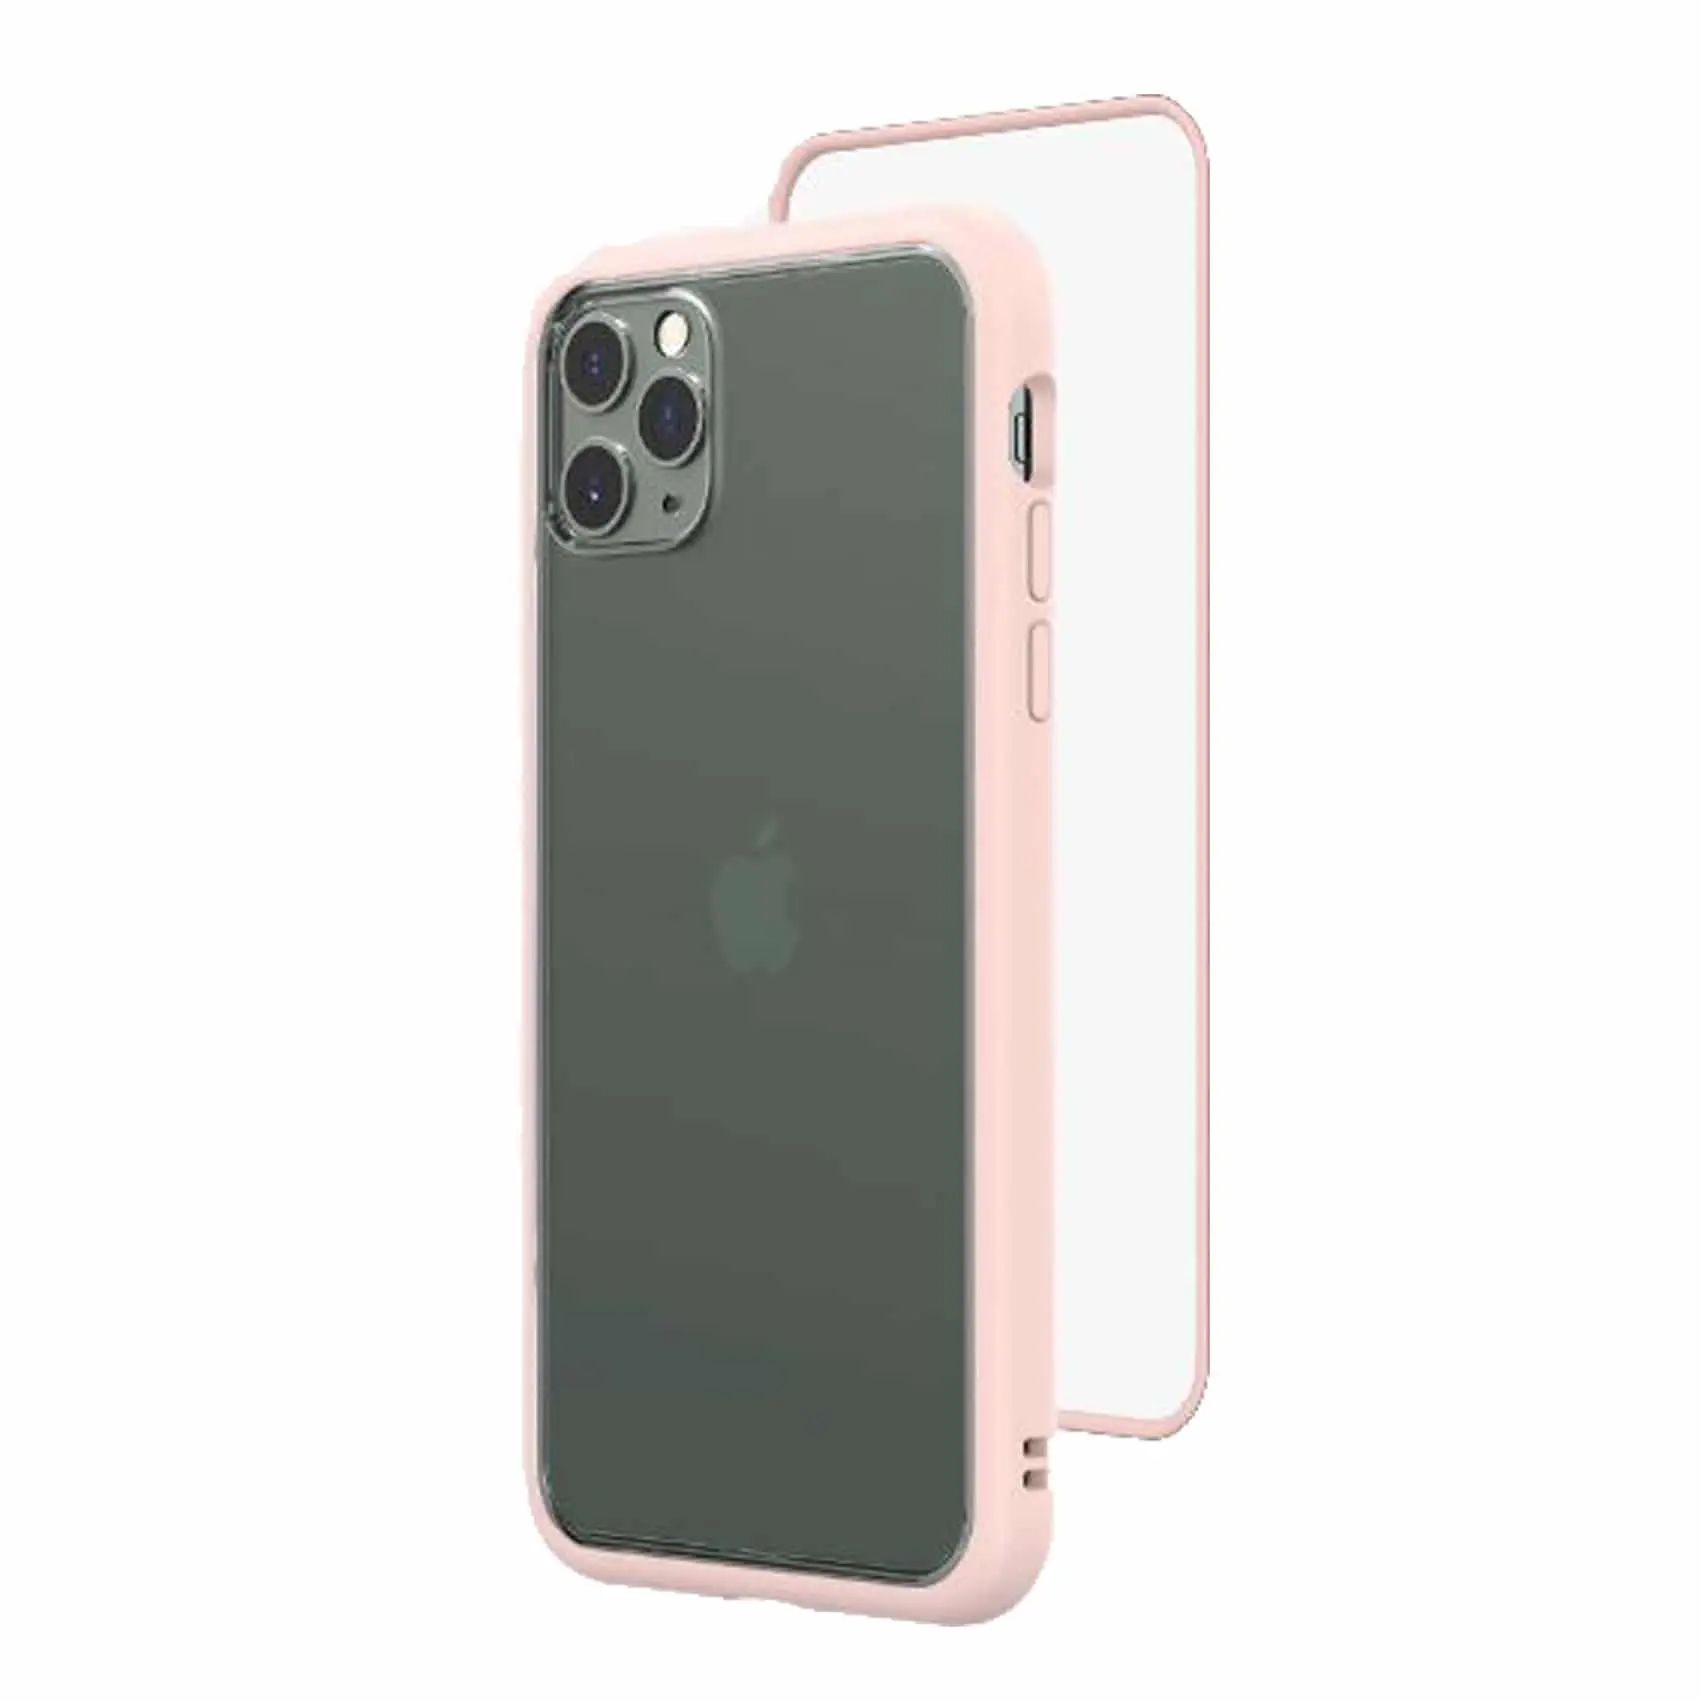 เคส RhinoShield รุ่น Mod NX - iPhone 11 Pro Max - Blush Pink